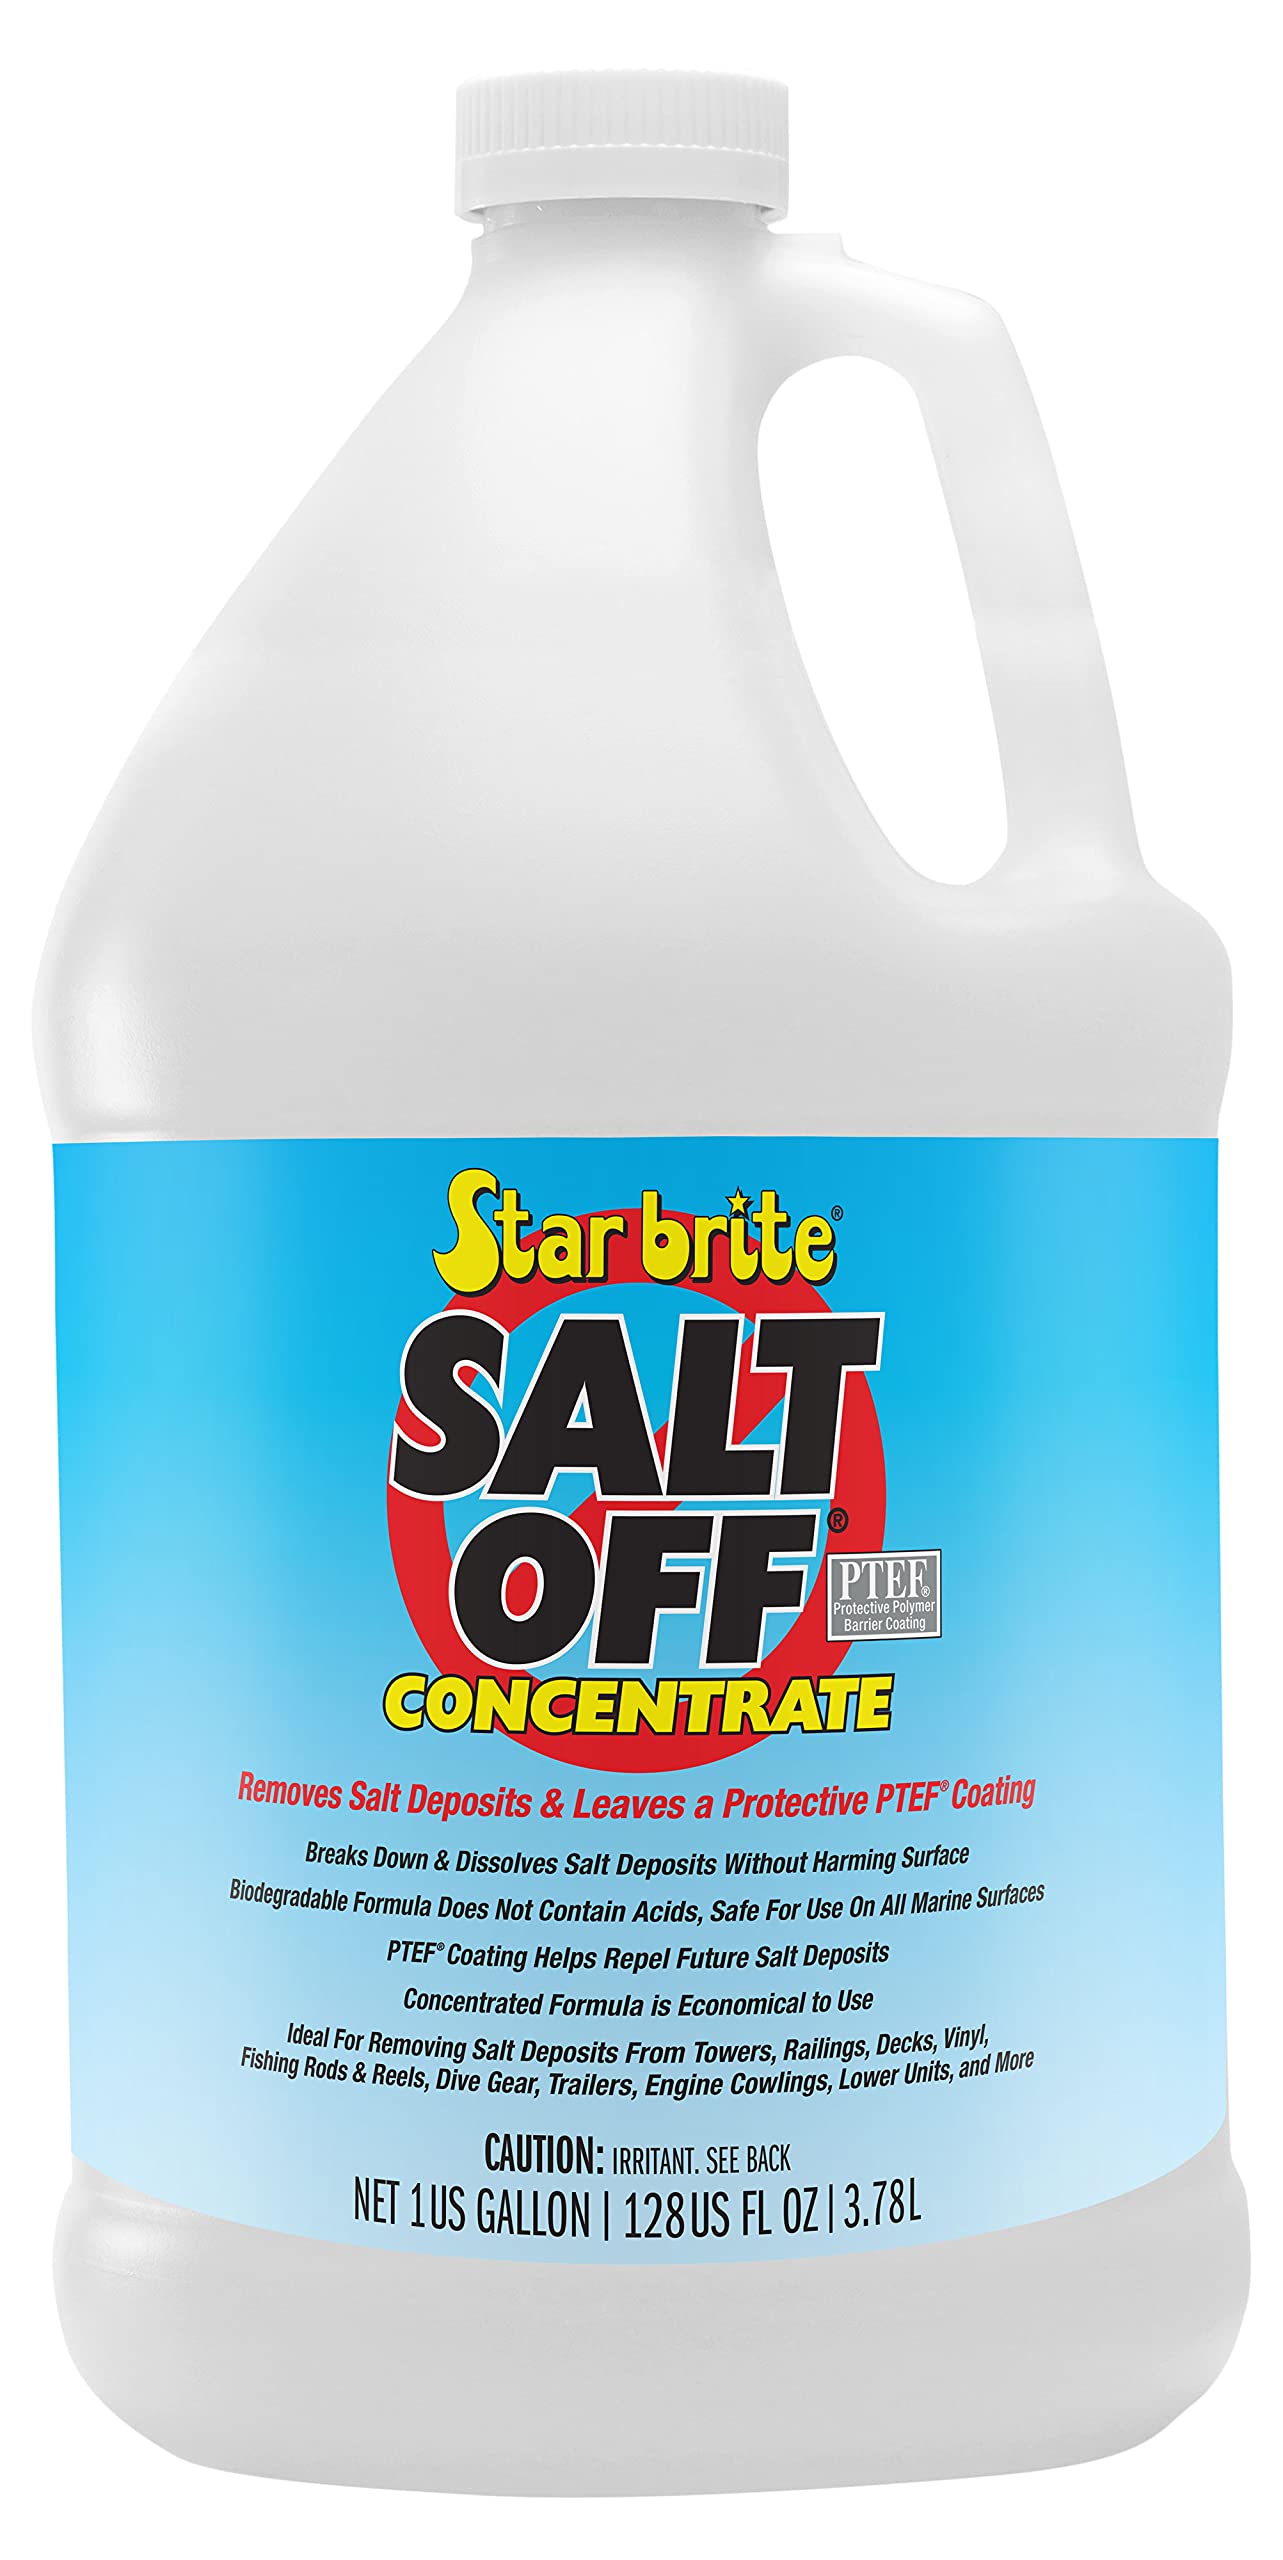 Salt Off